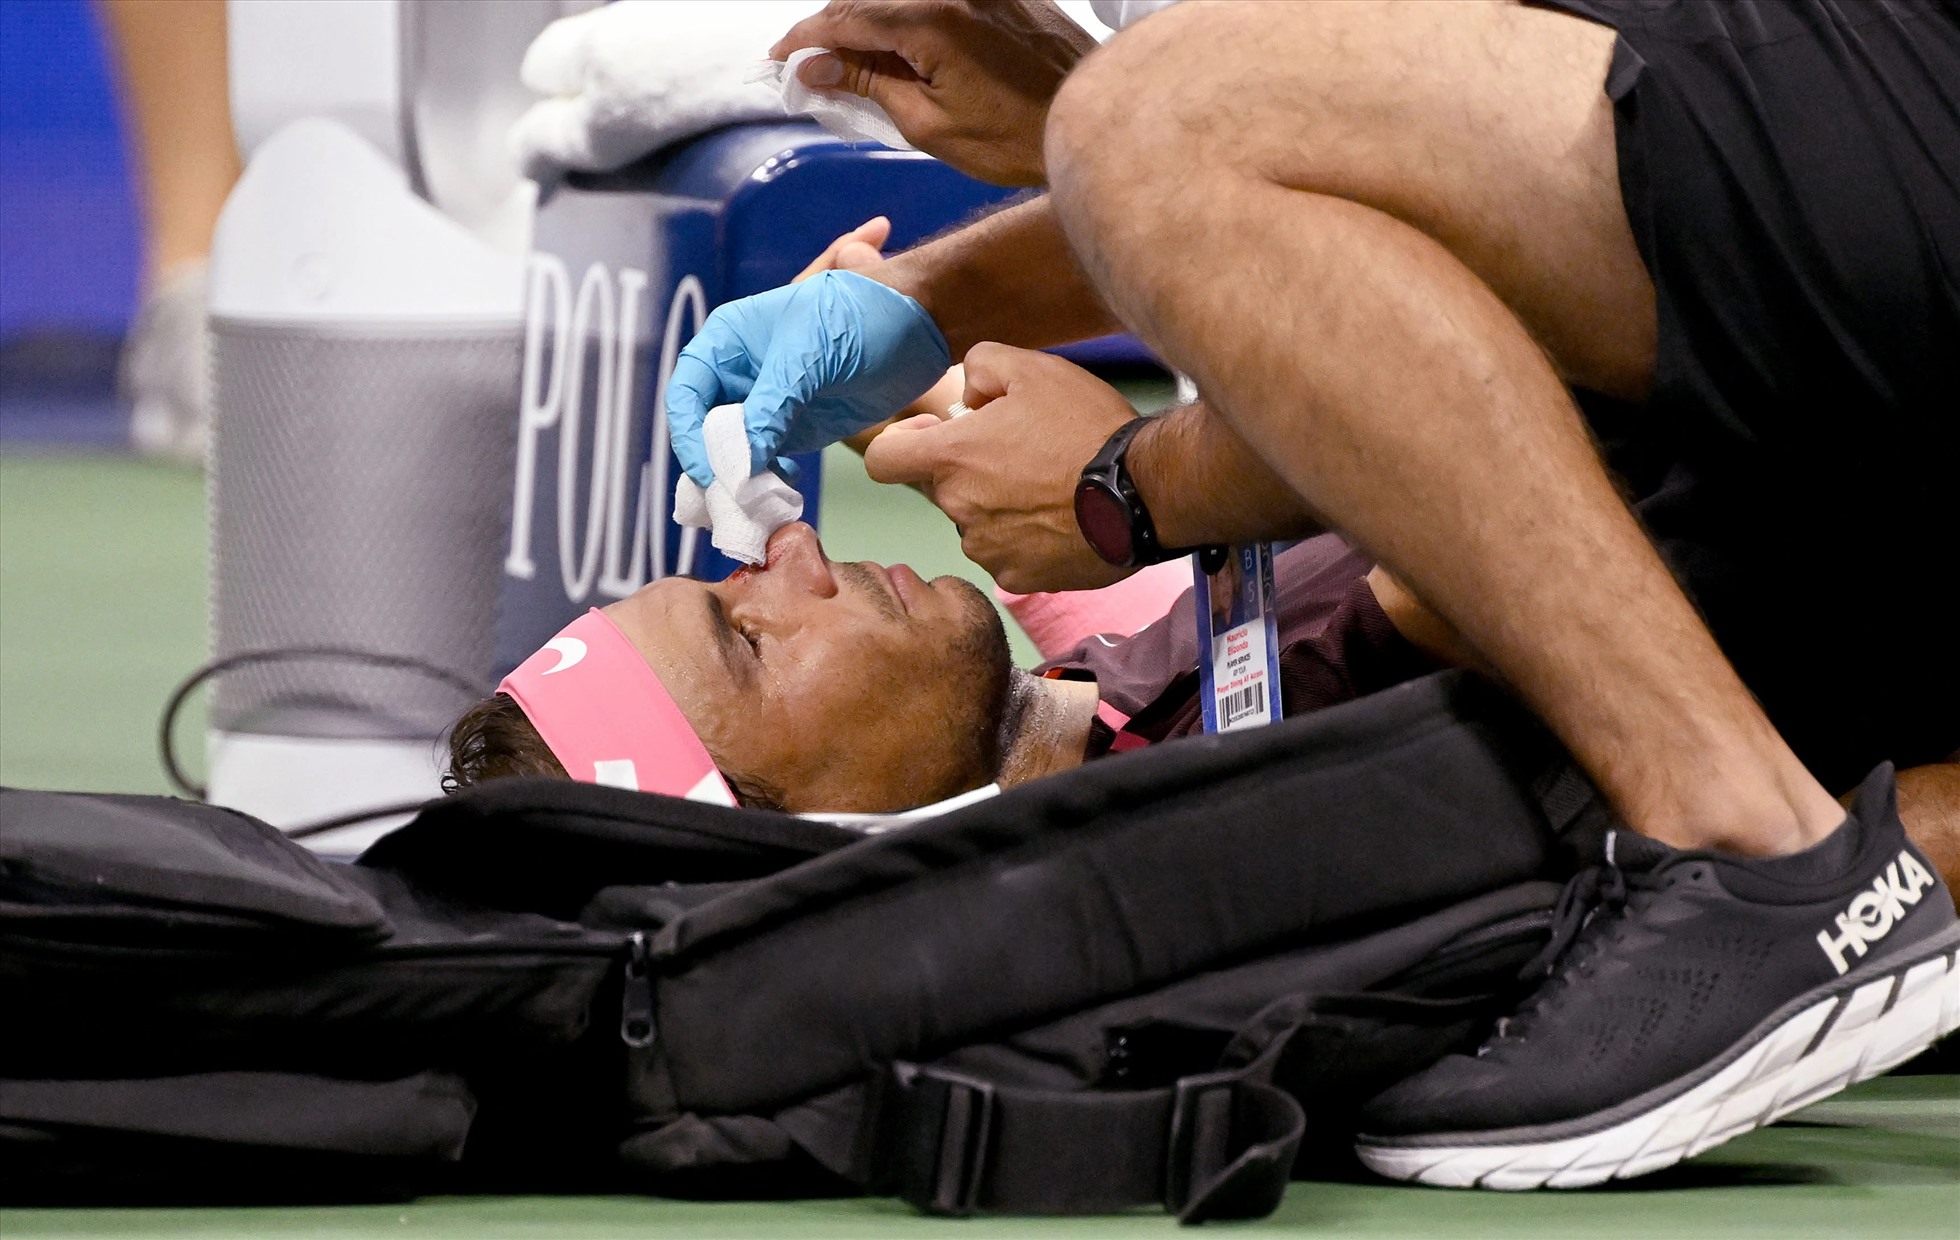 Nadal đi về chỗ nghỉ và được hỗ trợ y tế sau đó. Ảnh: Daily Mail